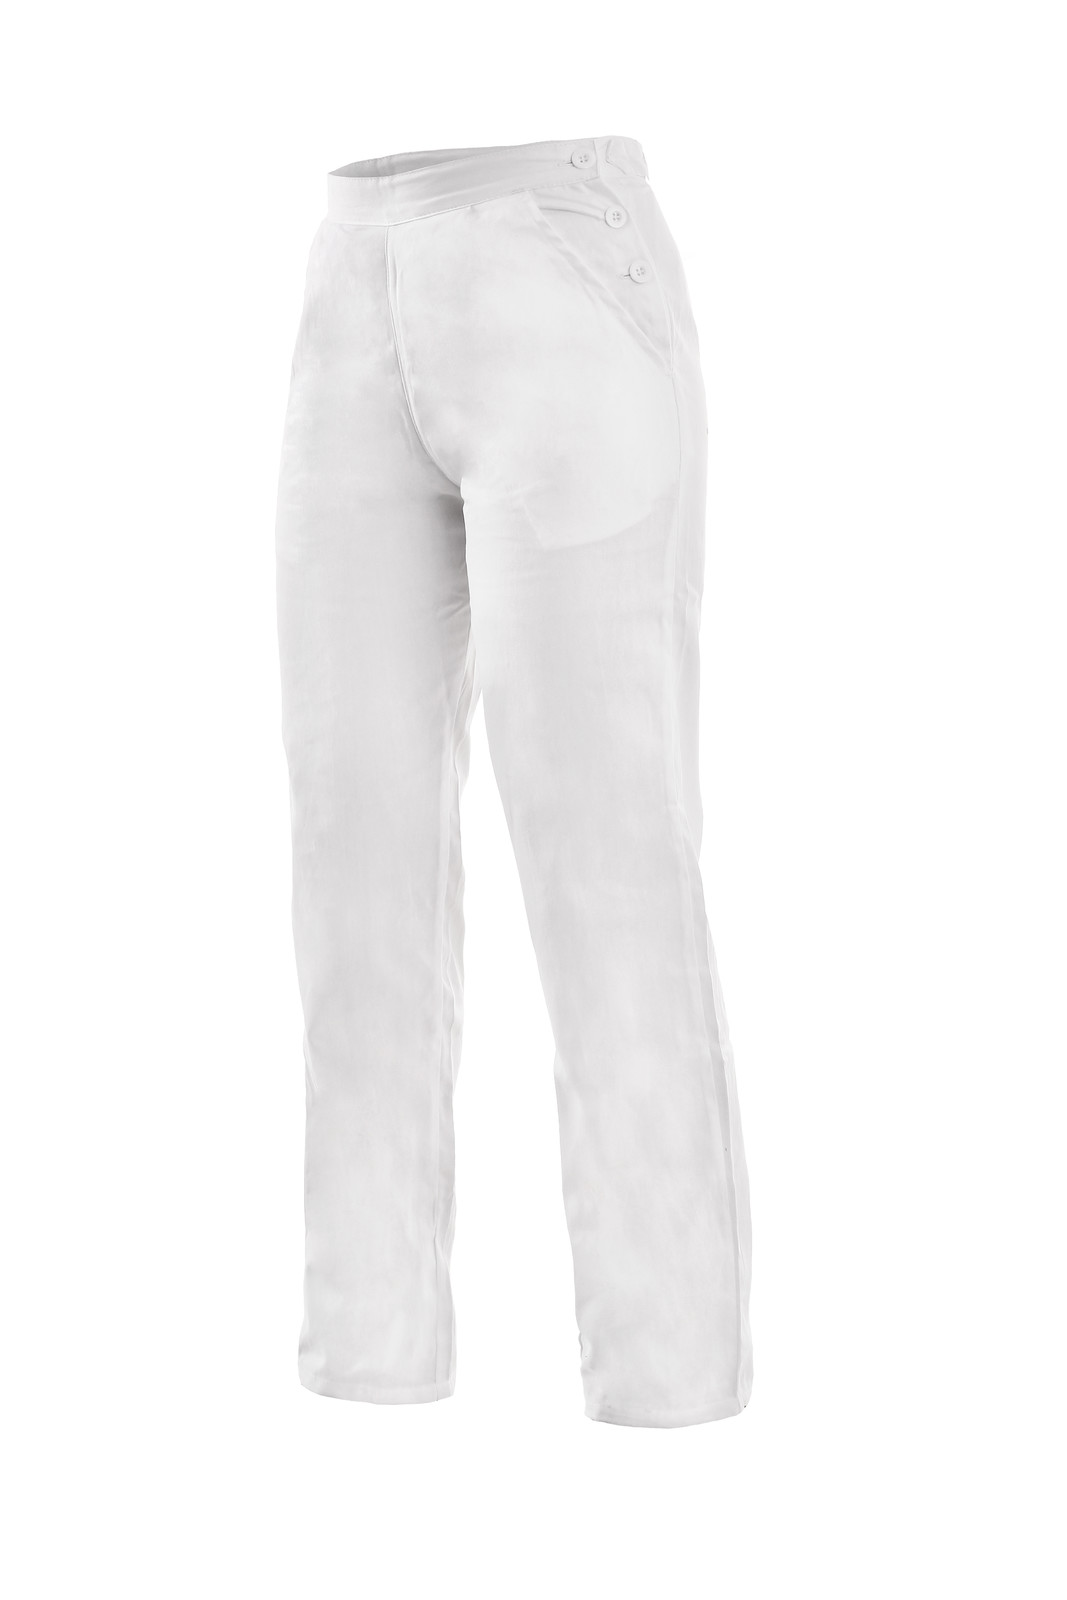 Dámske biele bavlnené nohavice Darja - veľkosť: 52, farba: biela